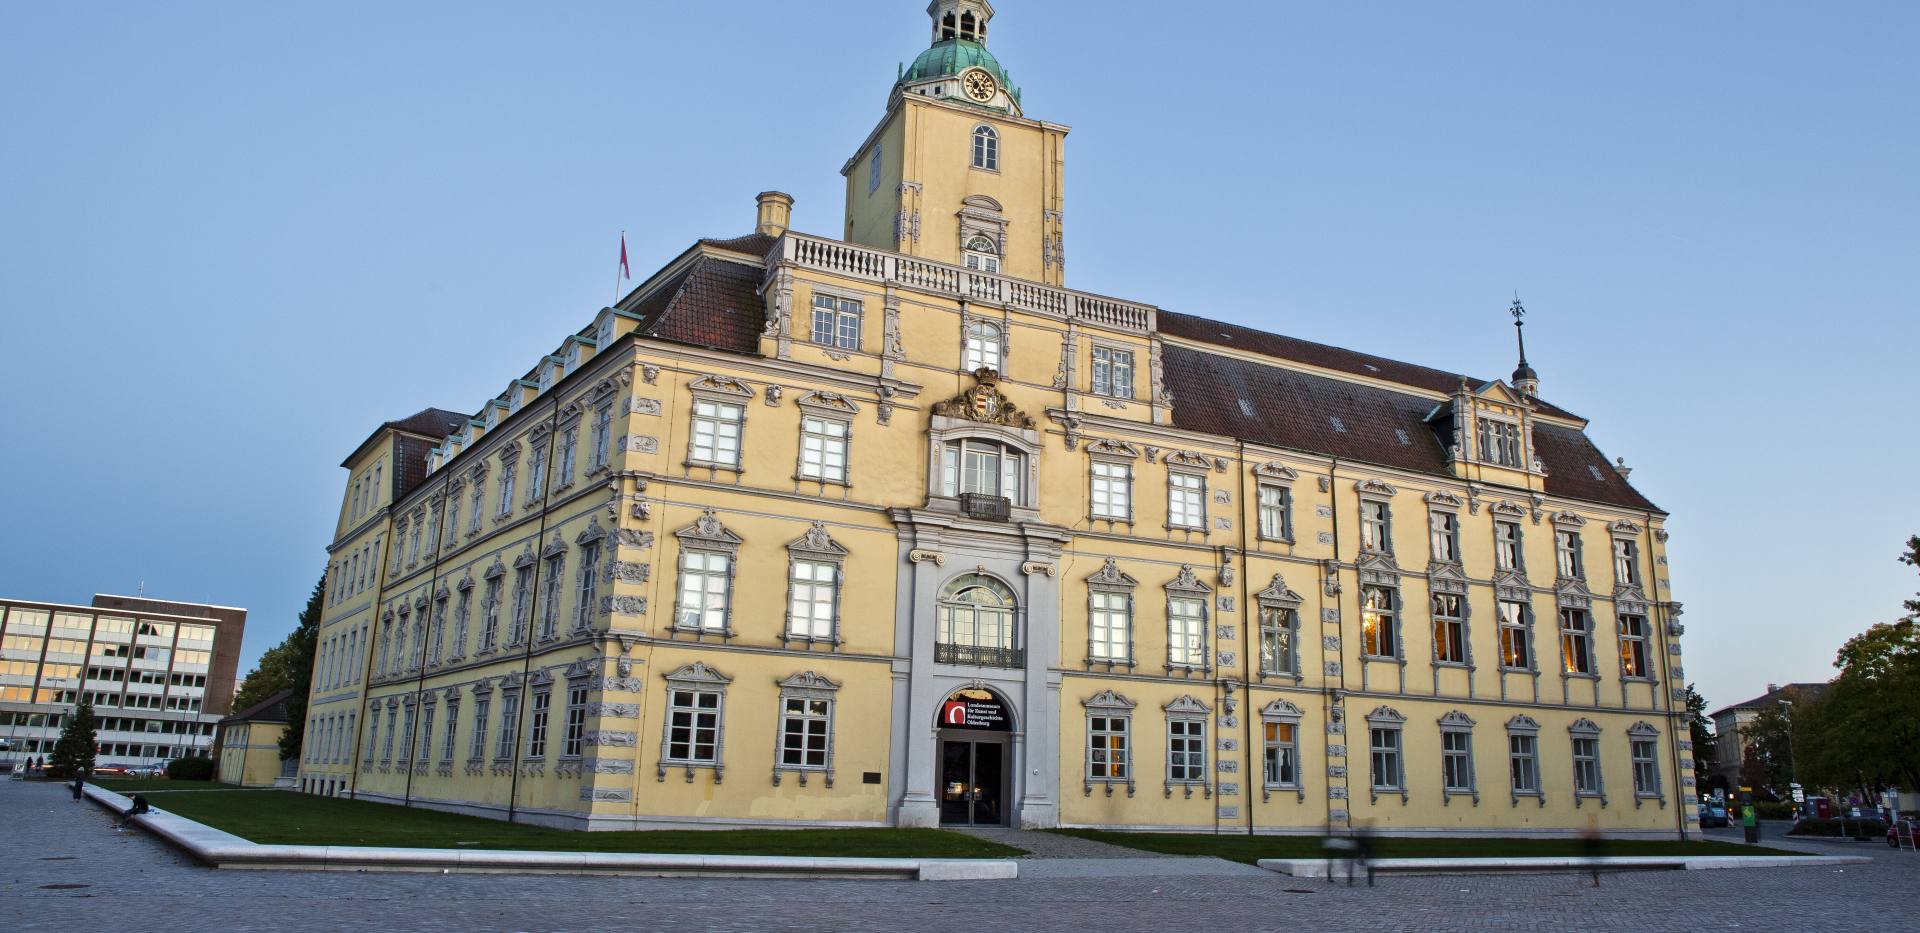 Außenansicht des Oldenburger Schlosses mit Eingang zum Landesmuseum.